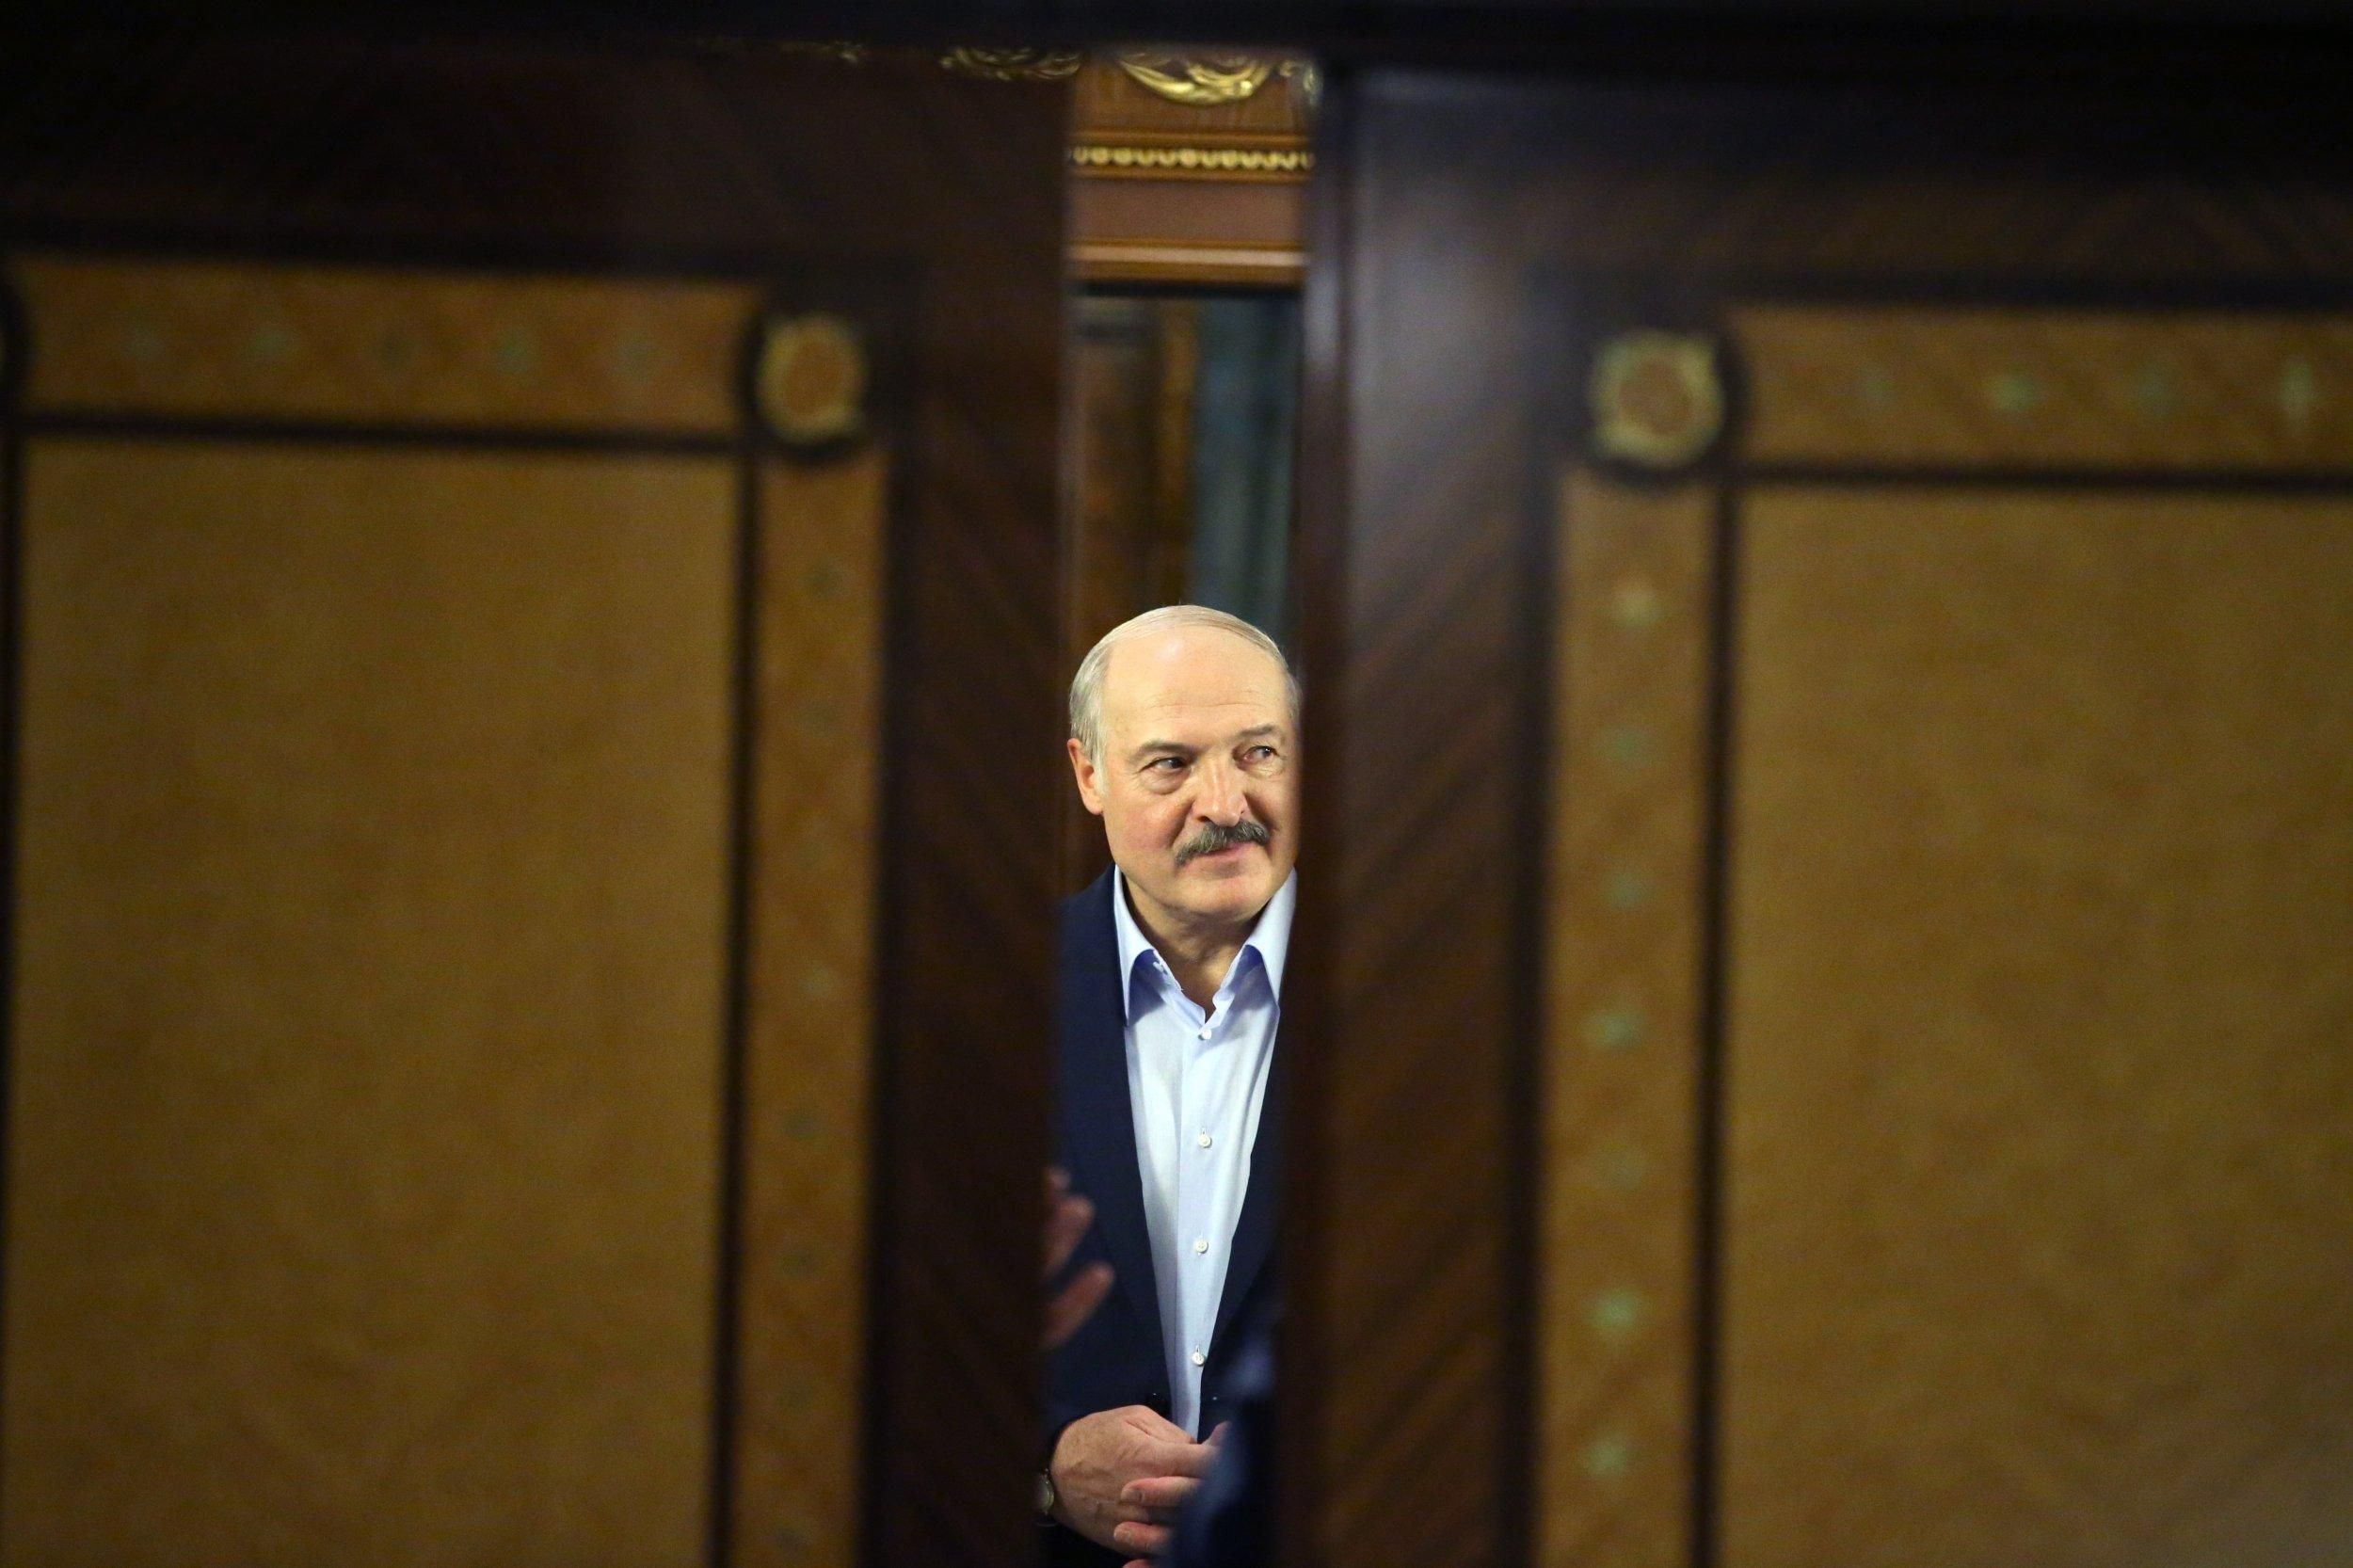 "Війна триватиме максимум 3 – 4 дні": експерт пояснив, чому Лукашенко псує відносини з Україною - Новини Росії і України - 24 Канал